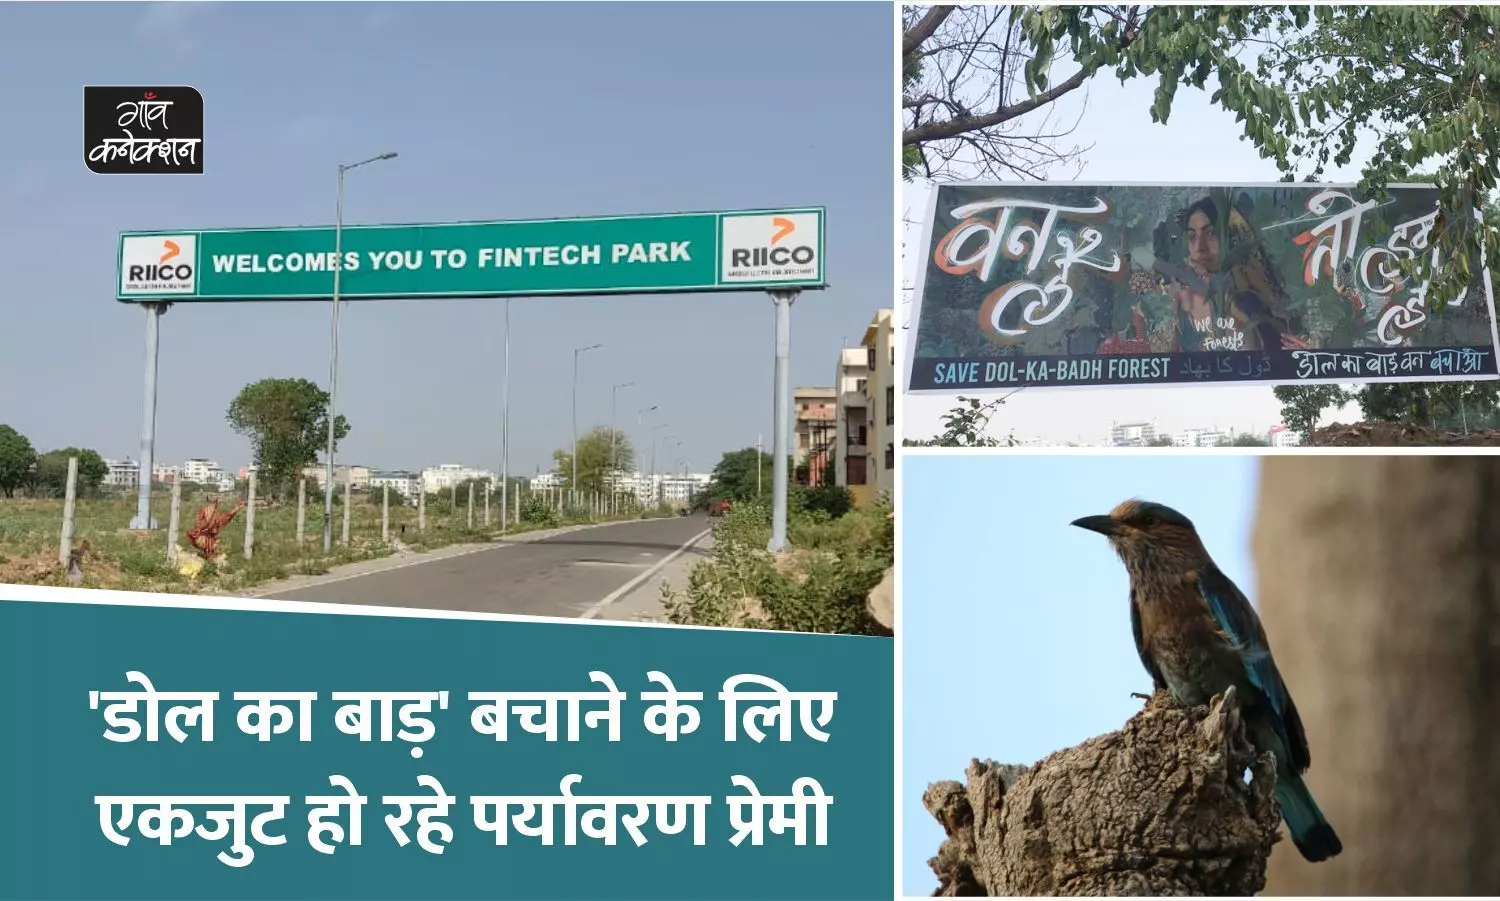 डोल का बाड़: जयपुर में 40 हेक्टेयर में फैले वन क्षेत्र को उजाड़ कर बनेगा फिनटेक पार्क, विरोध में उतरे पर्यावरण प्रेमी